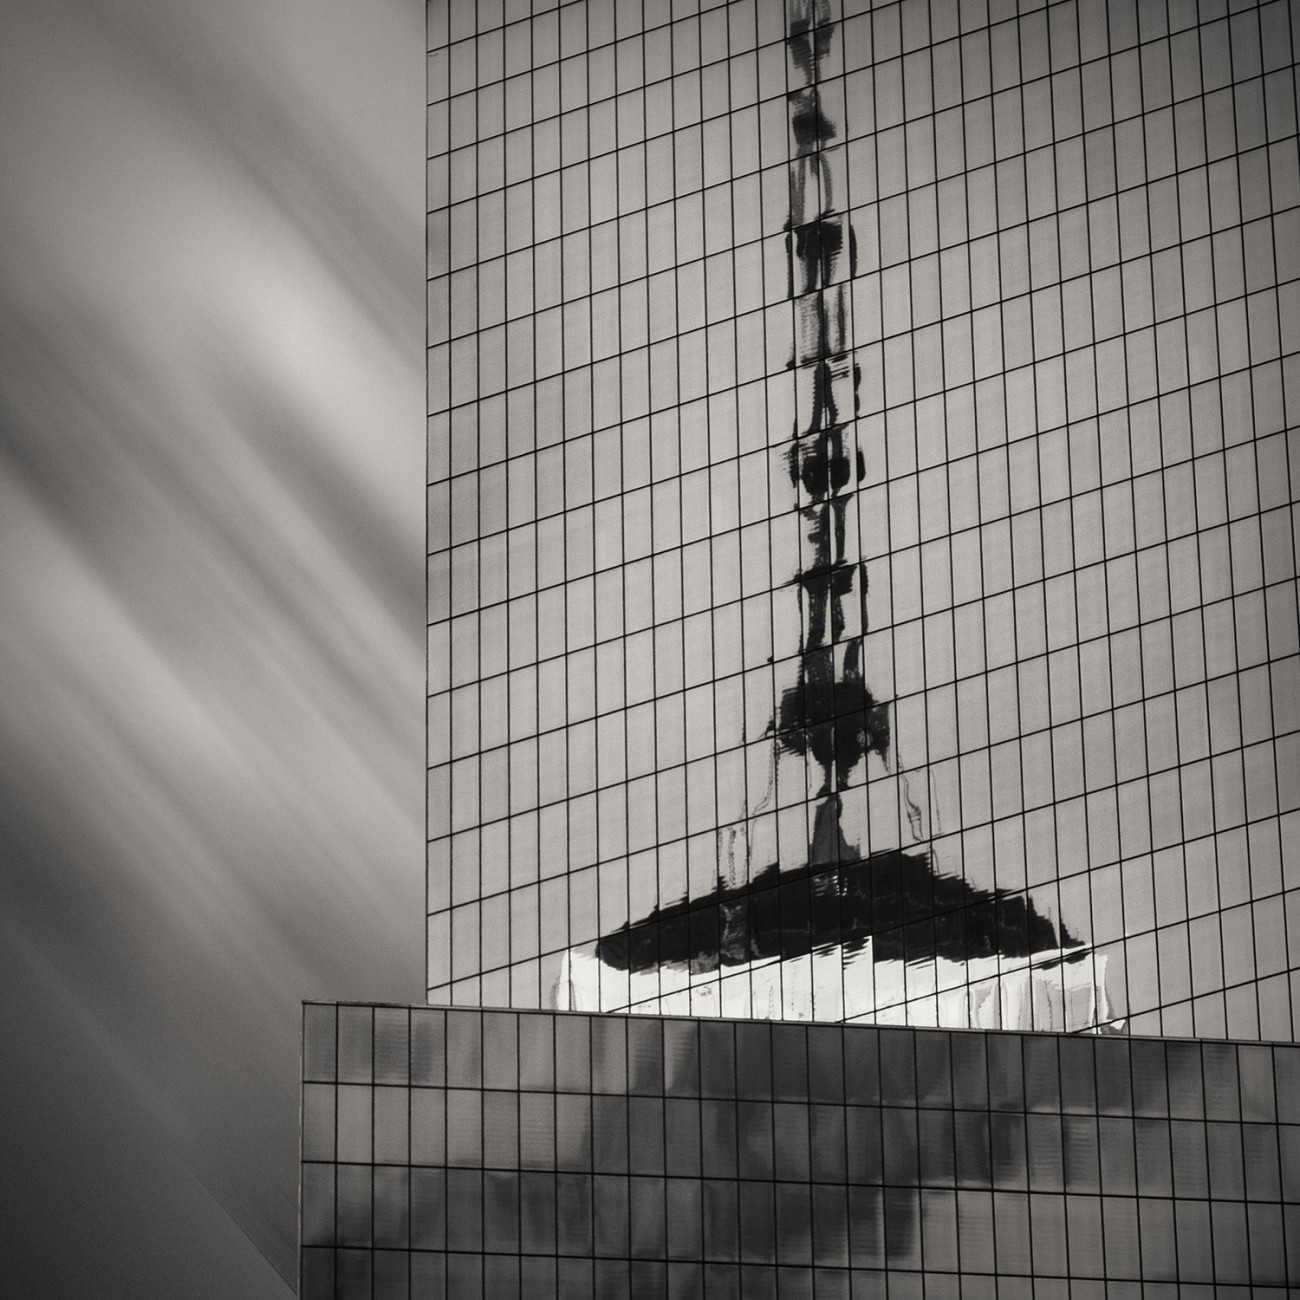 Reflection Trade Center tower, NY, 2015